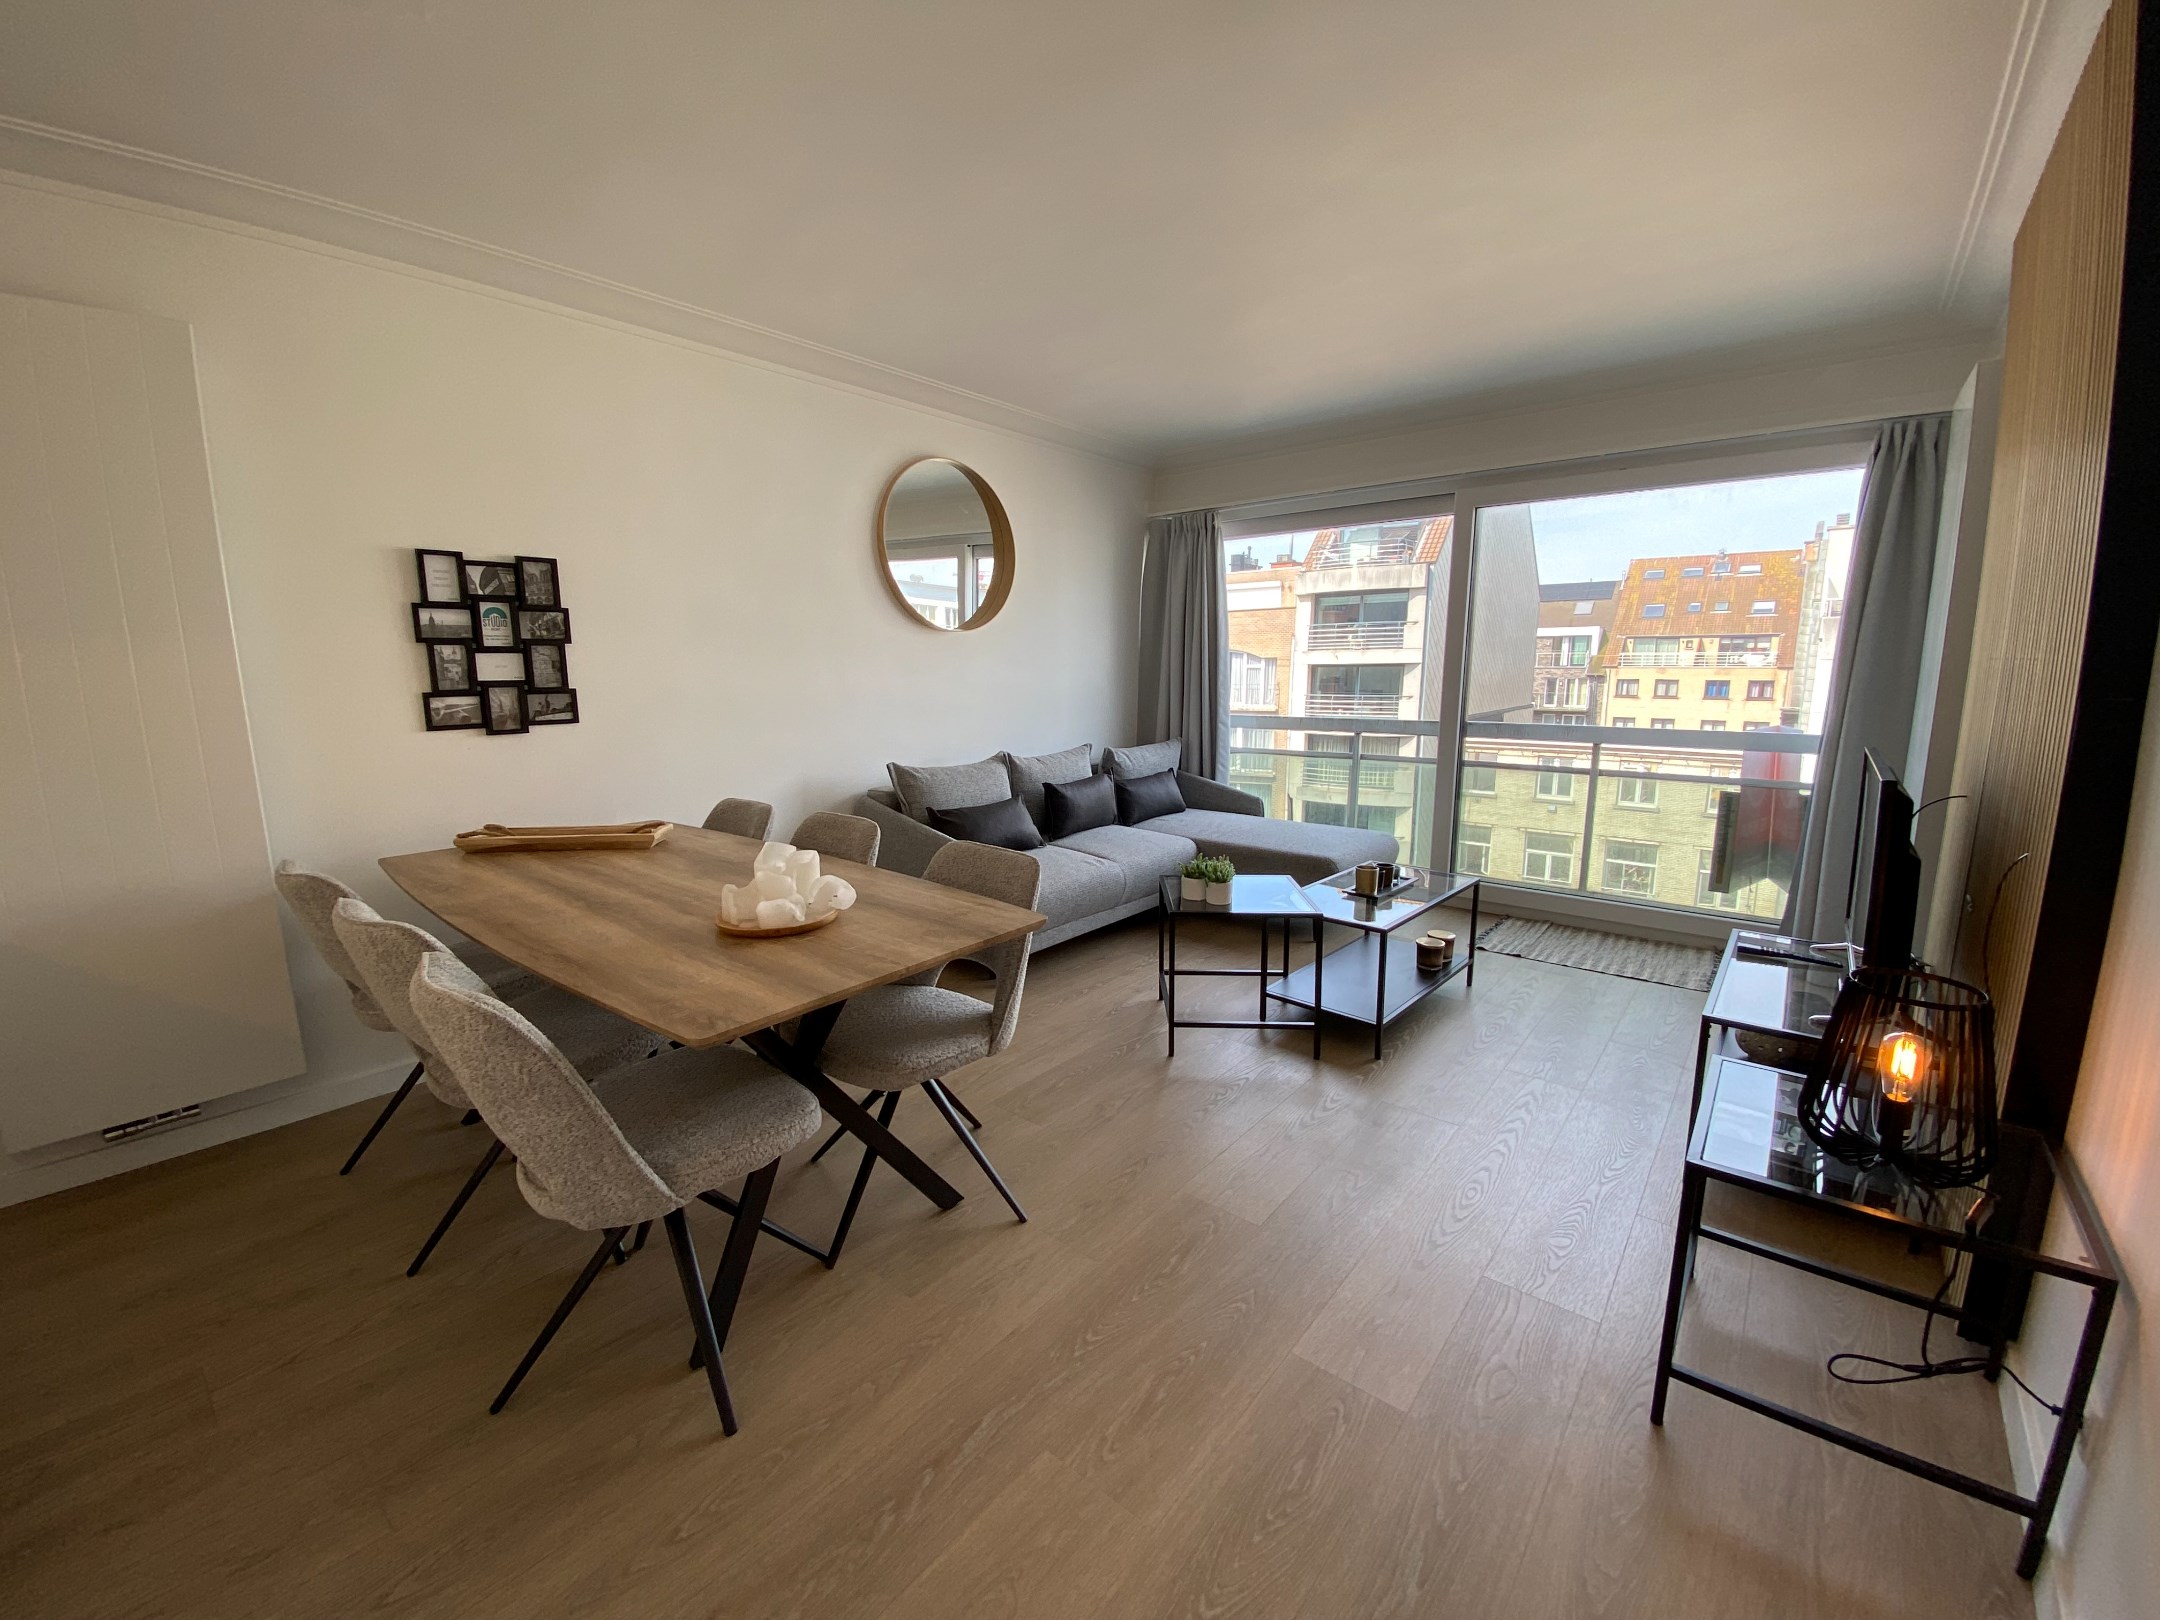 GEMEUBELD - Modern ingericht 1-slaapkamer appartement gelegen in de Lippenslaan te Knokke. foto 2